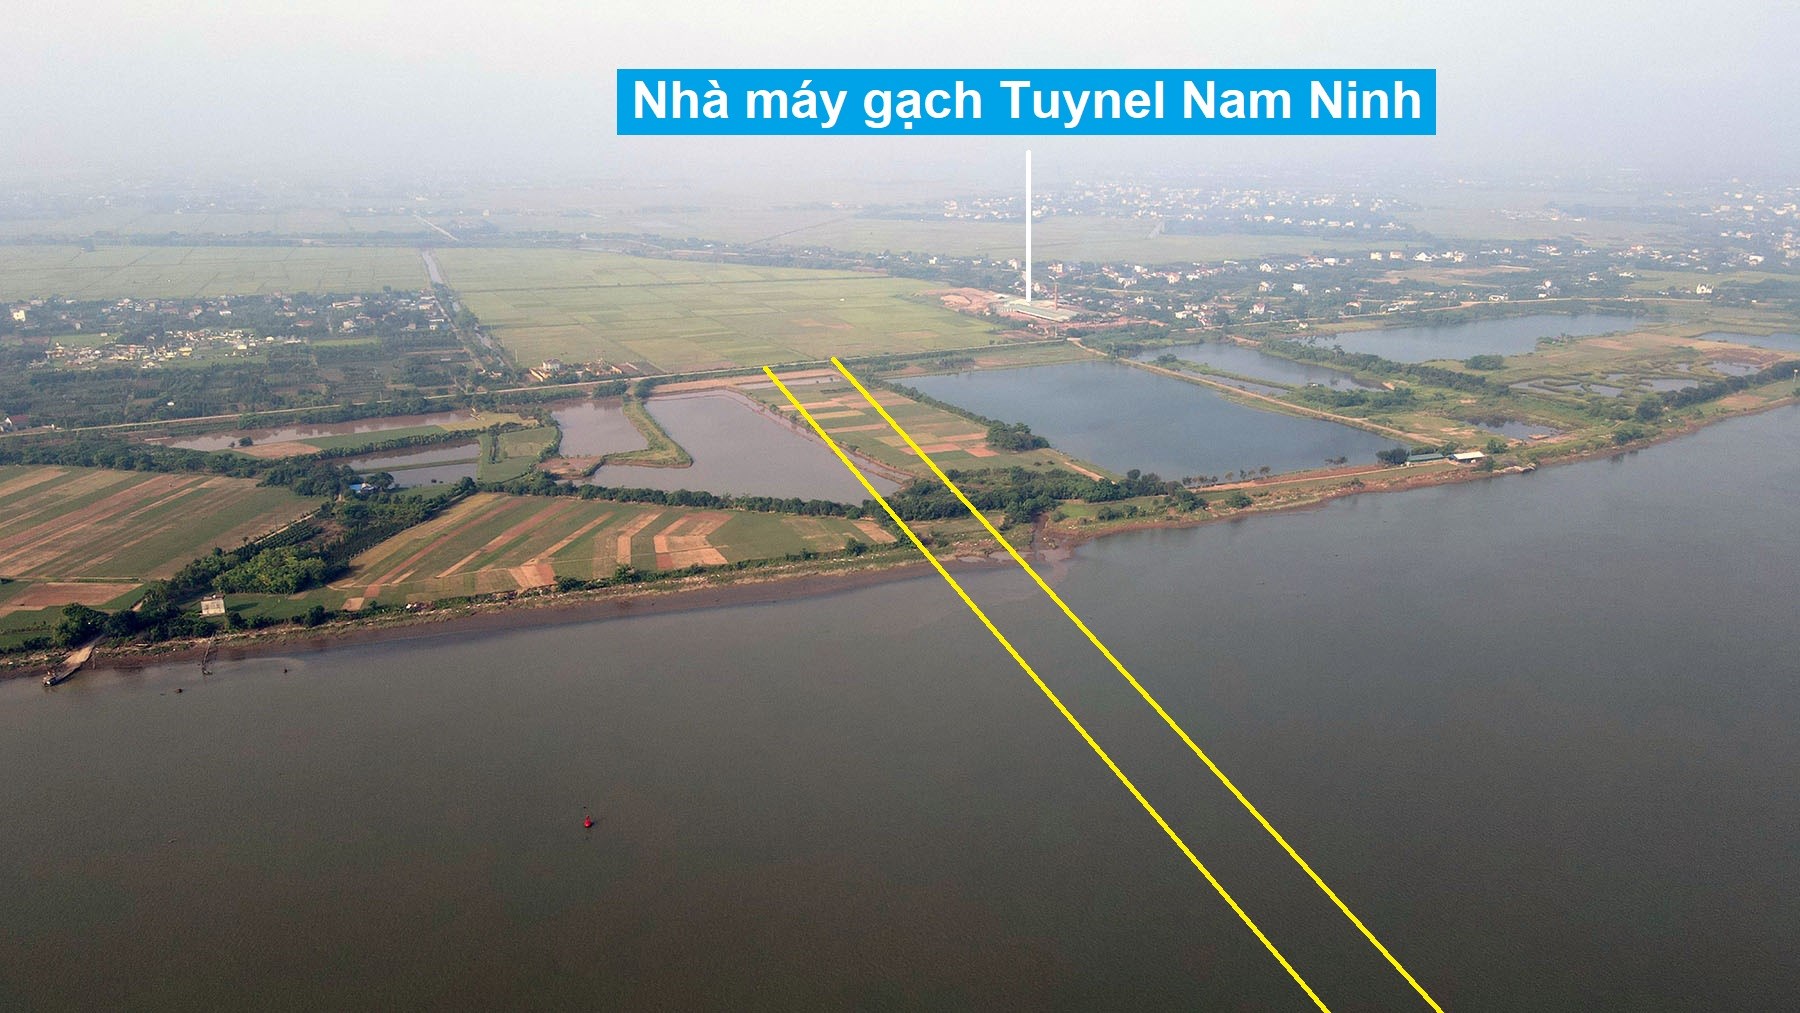 Toàn cảnh vị trí quy hoạch xây cầu đường sắt vượt sông Hồng nối Nam Định - Thái Bình